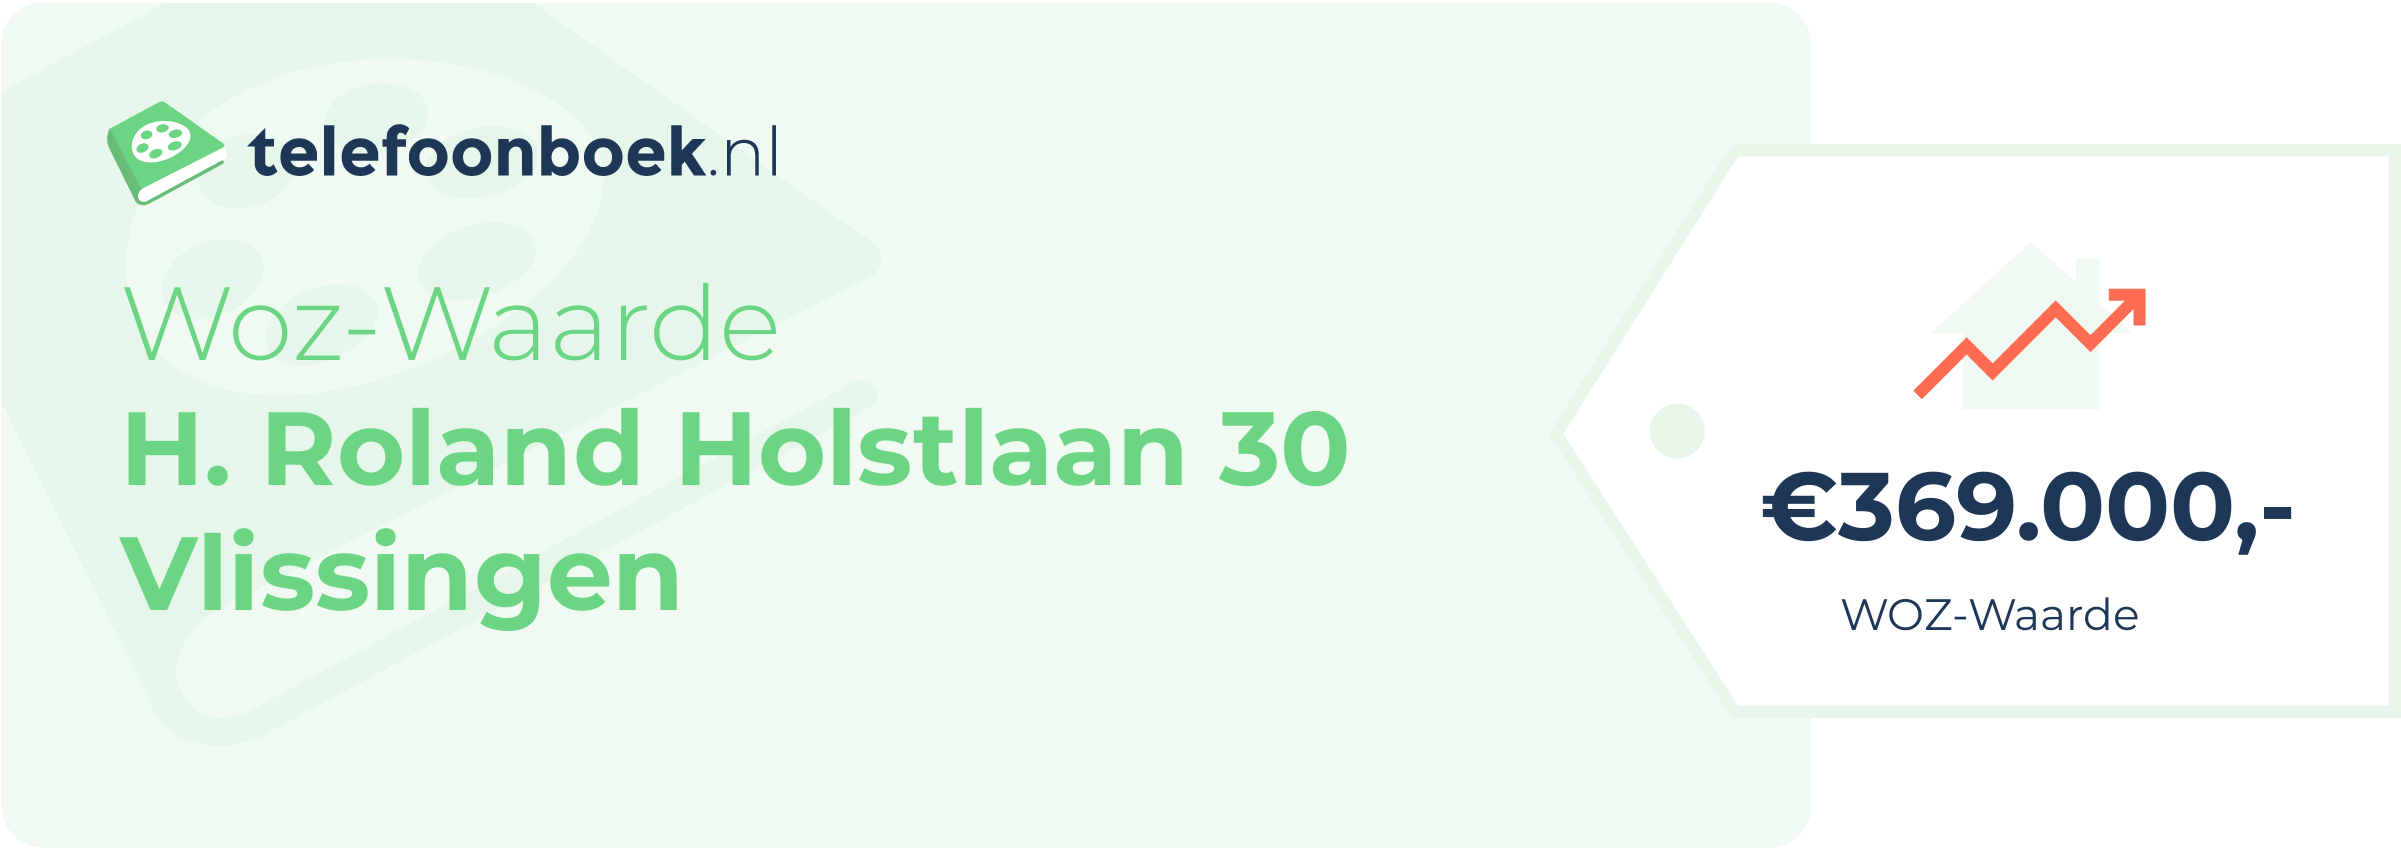 WOZ-waarde H. Roland Holstlaan 30 Vlissingen